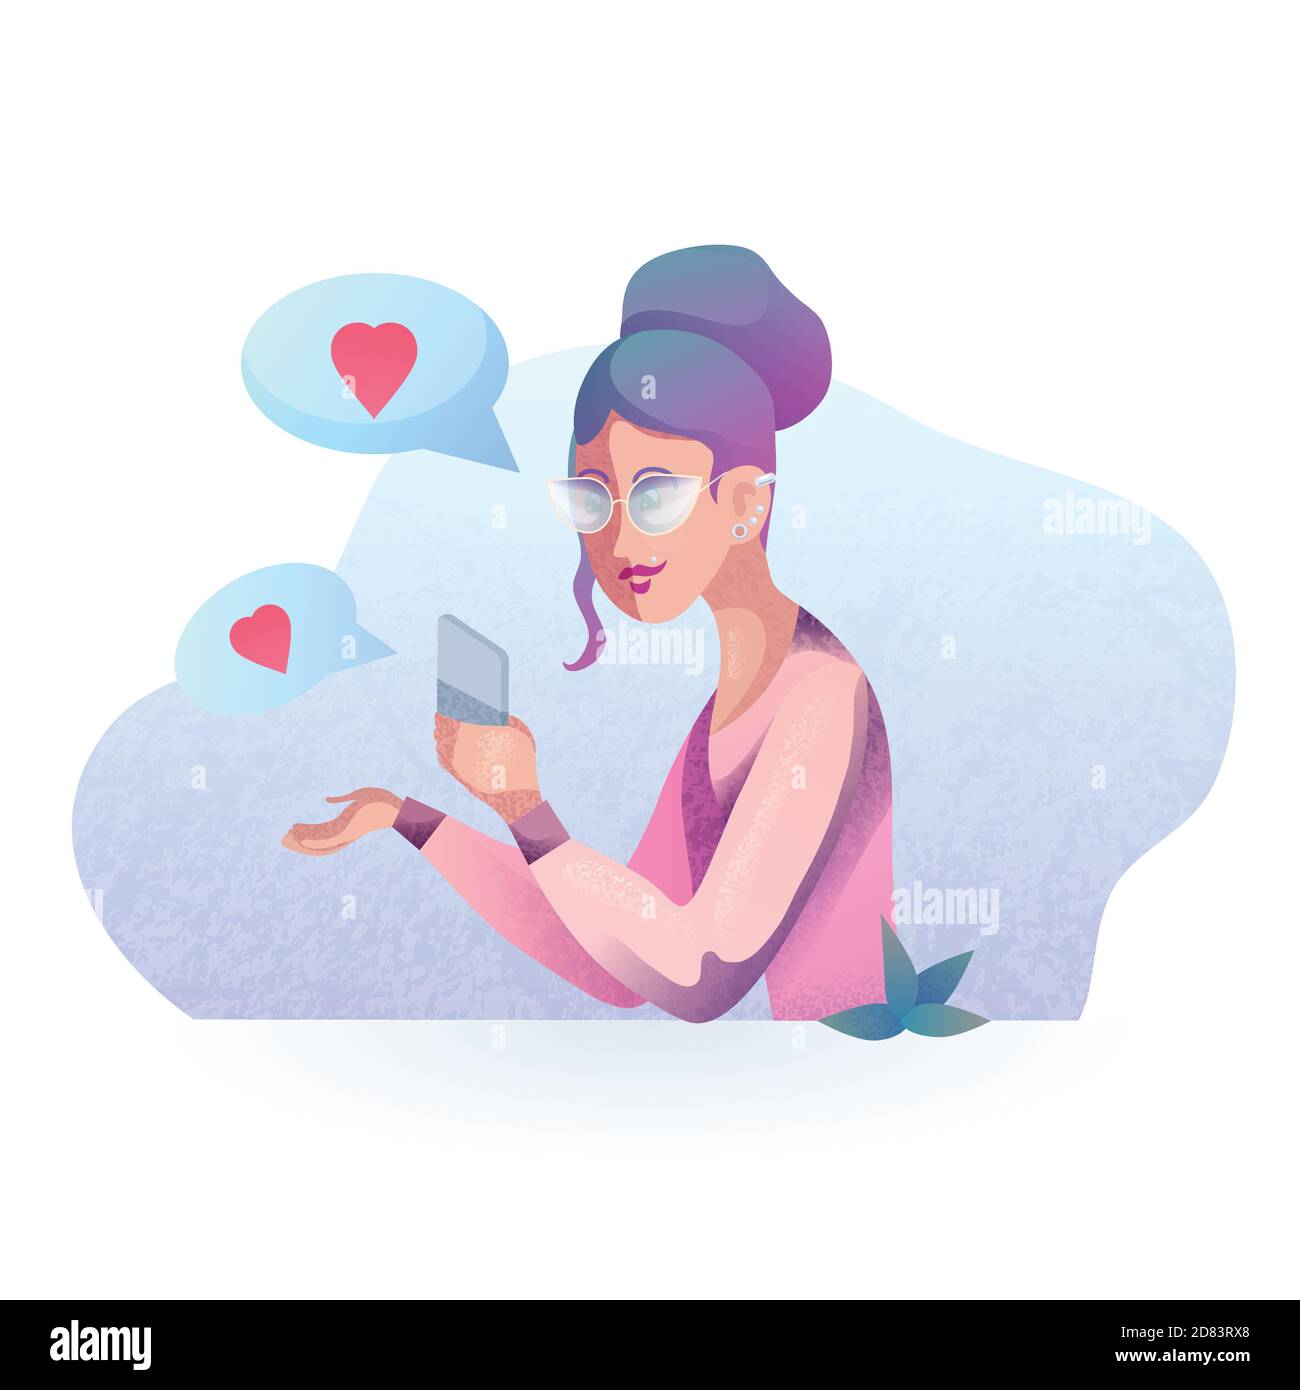 Immagine vettoriale textural di una ragazza hipster che flirta sul telefono in stile moderno. Incontri mobili. Insieme a distanza. Illustrazione stilizzata vettoriale Illustrazione Vettoriale